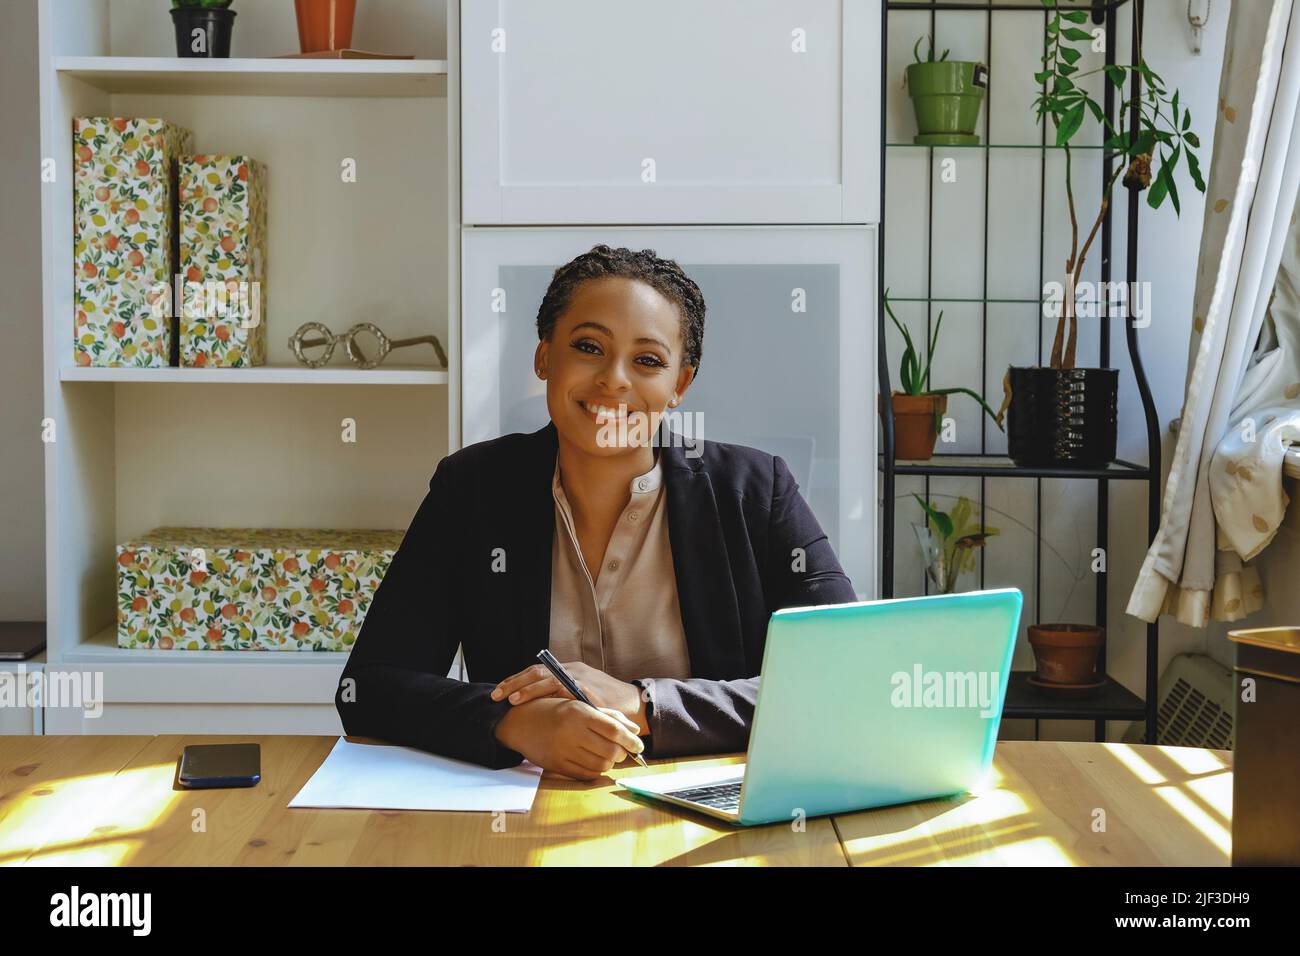 Lächelnd Junge Erwachsene Unternehmer freiberufliche schwarze Frau Kleinunternehmer mit Laptop und Smartphone arbeiten im Home Office Blick auf Kamera aufgenommen Stockfoto